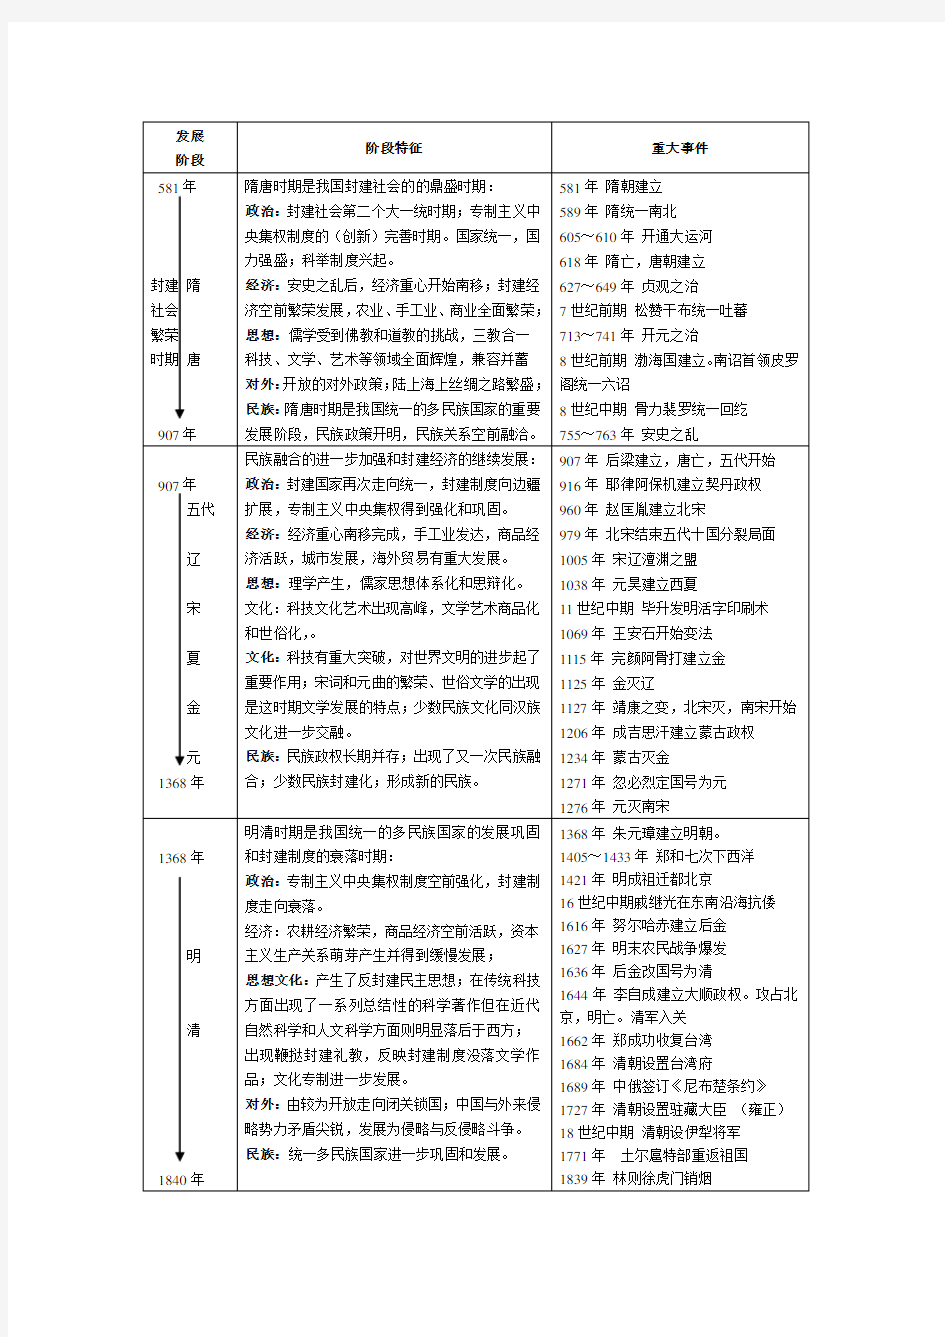 中国历史大事年表(整理)